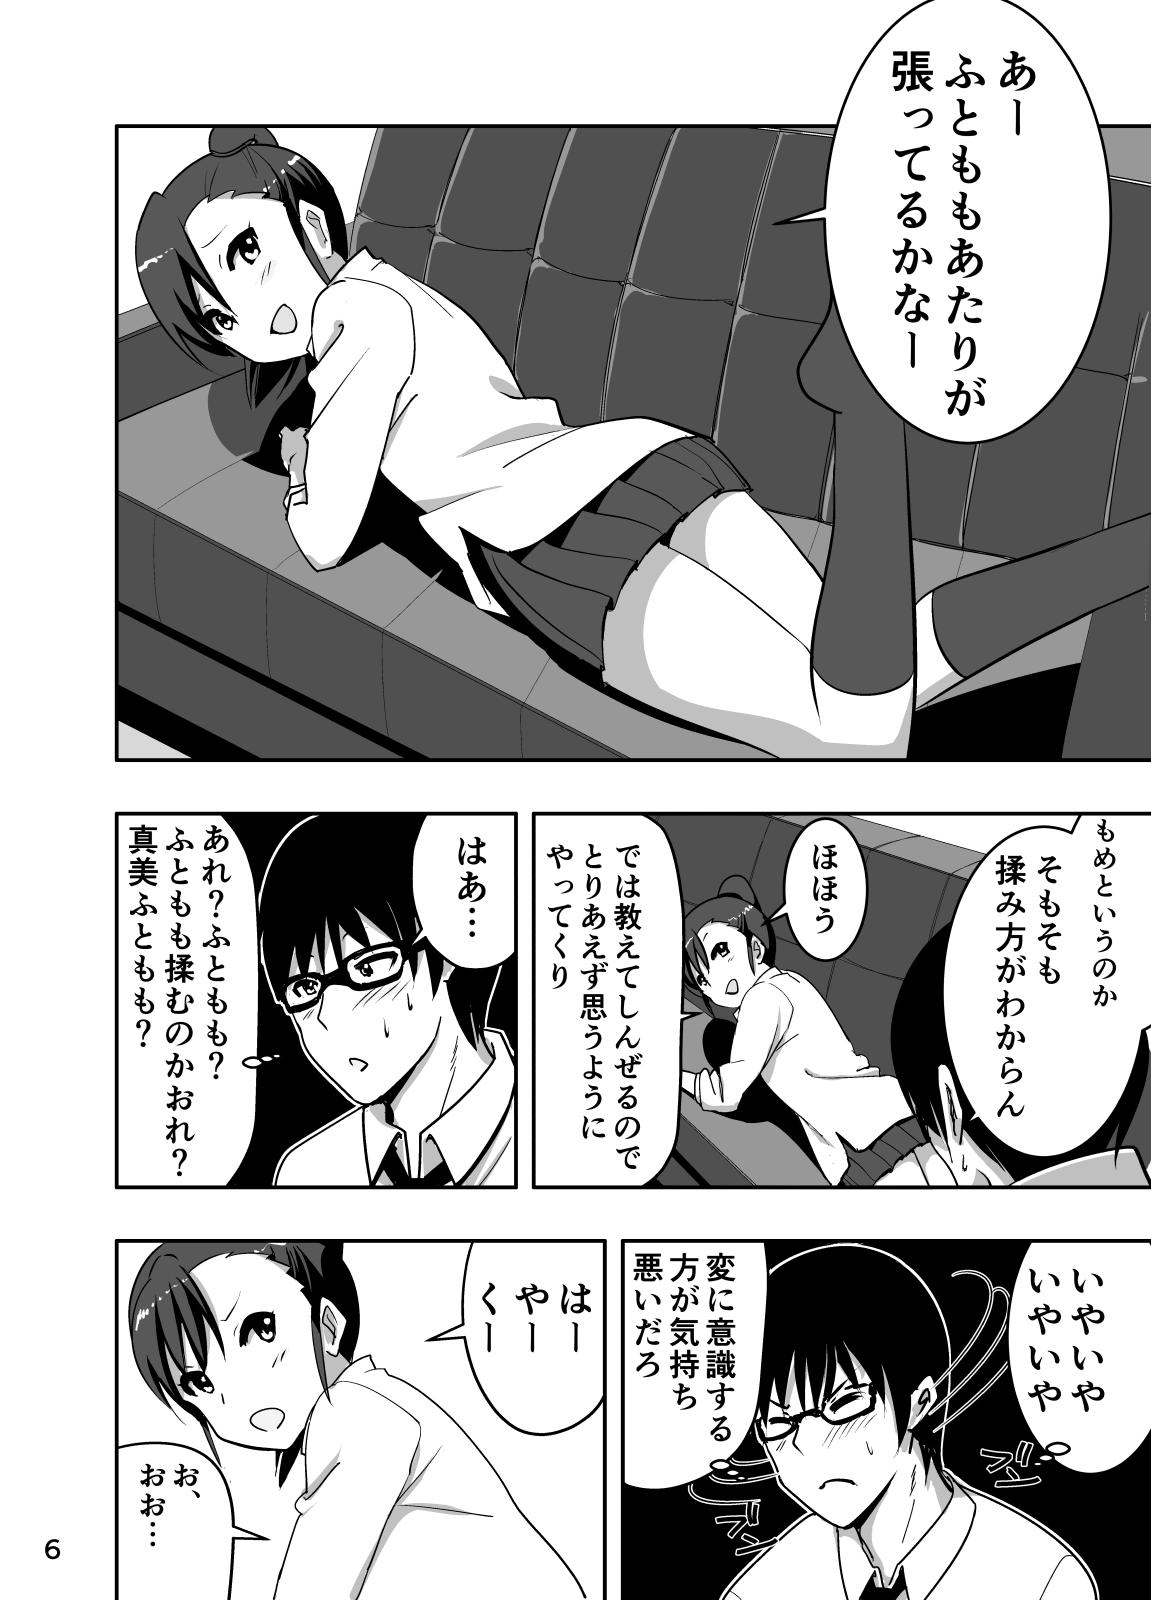 Negao Mami Manga 3 - The idolmaster Longhair - Page 6